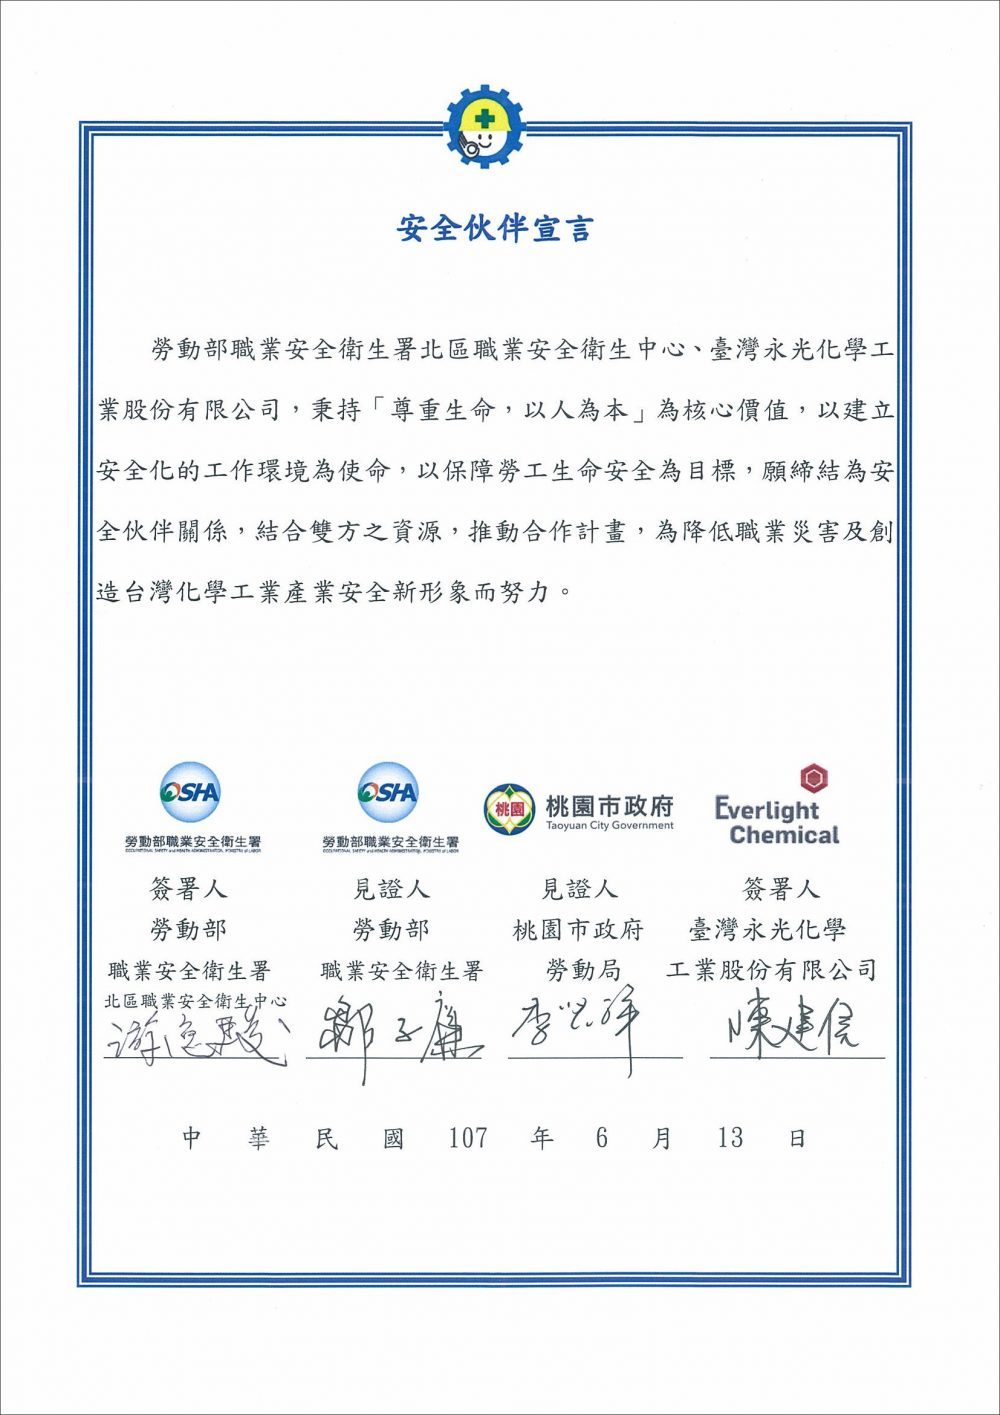 永光化學與職業安全衛生署於2018年6月13日簽訂「安全伙伴」宣言，圖為「安全伙伴宣言證書」。